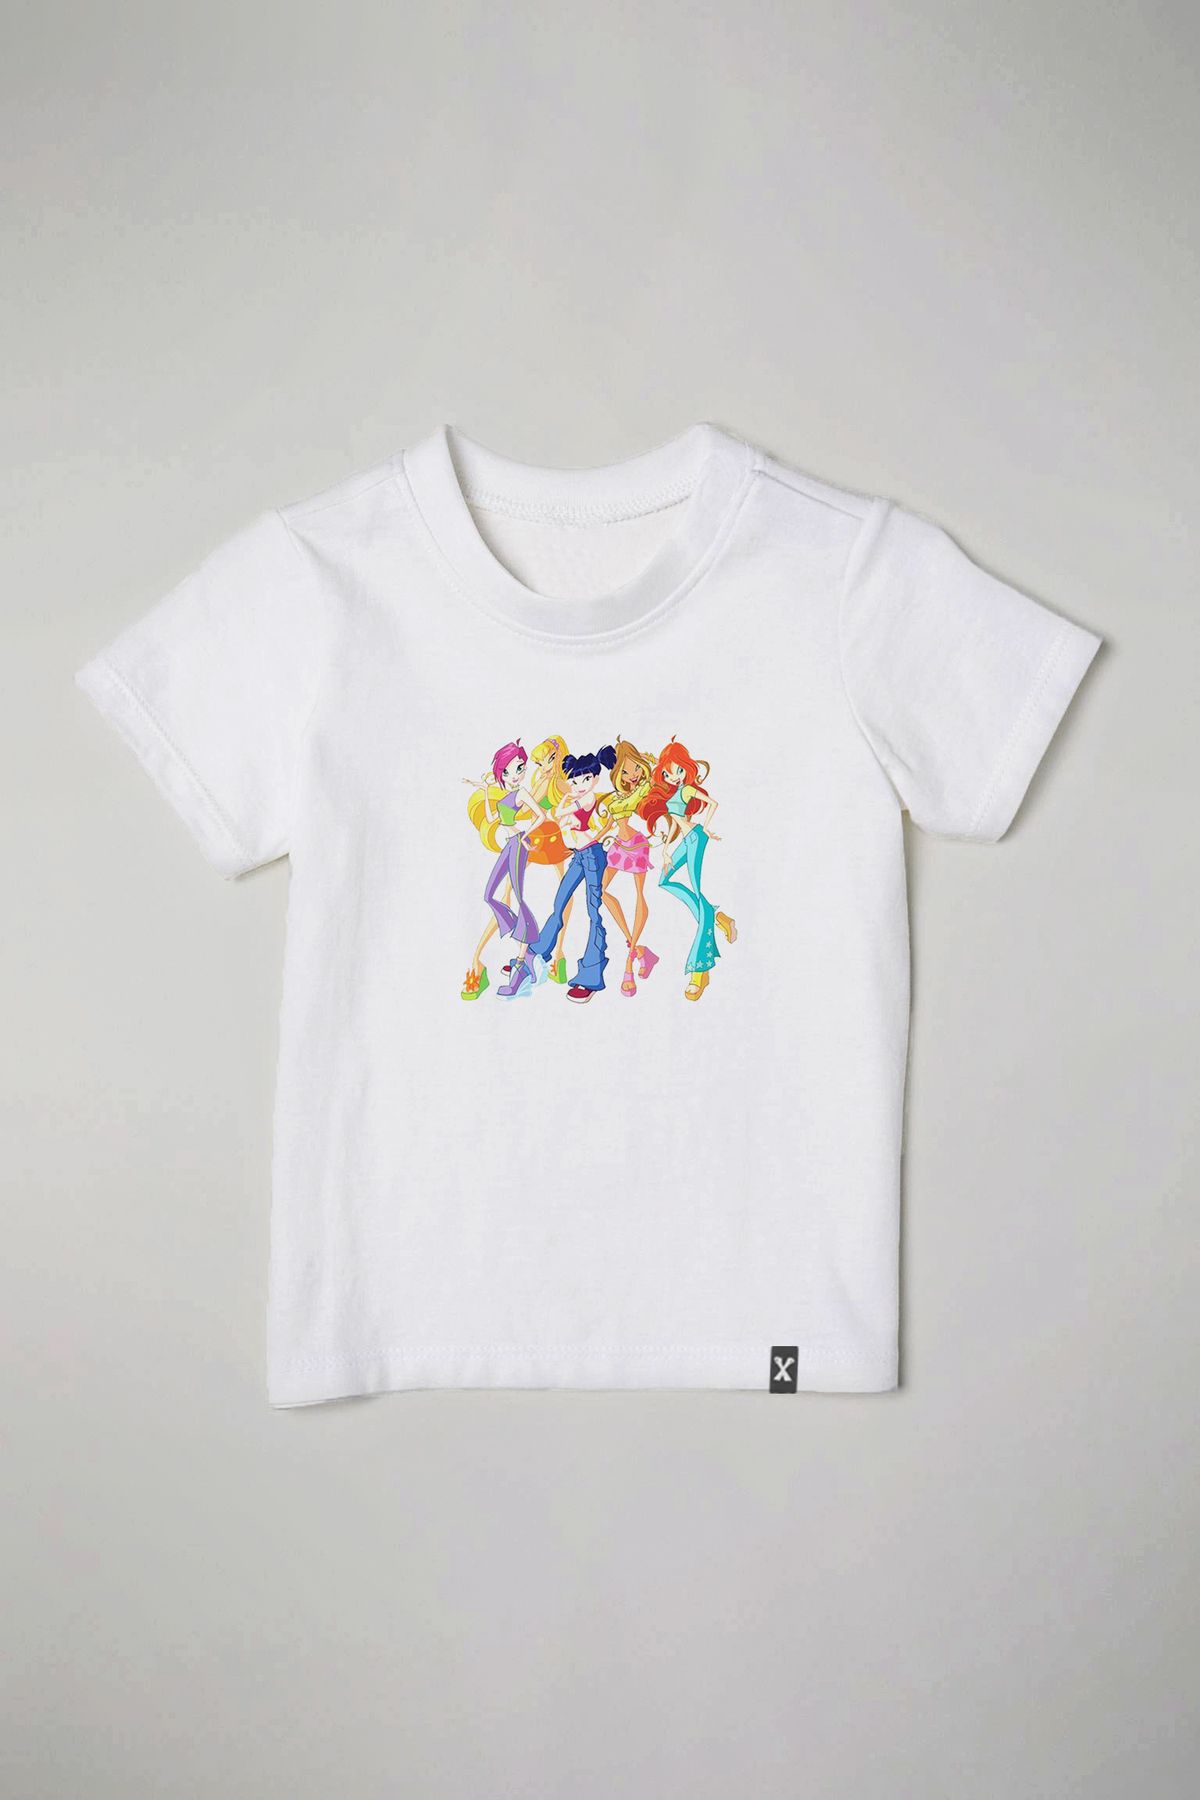 Clothy Fashion Winx Club Çizgi Film Karakterleri Baskılı Tasarım Bebek Çocuk Tişört